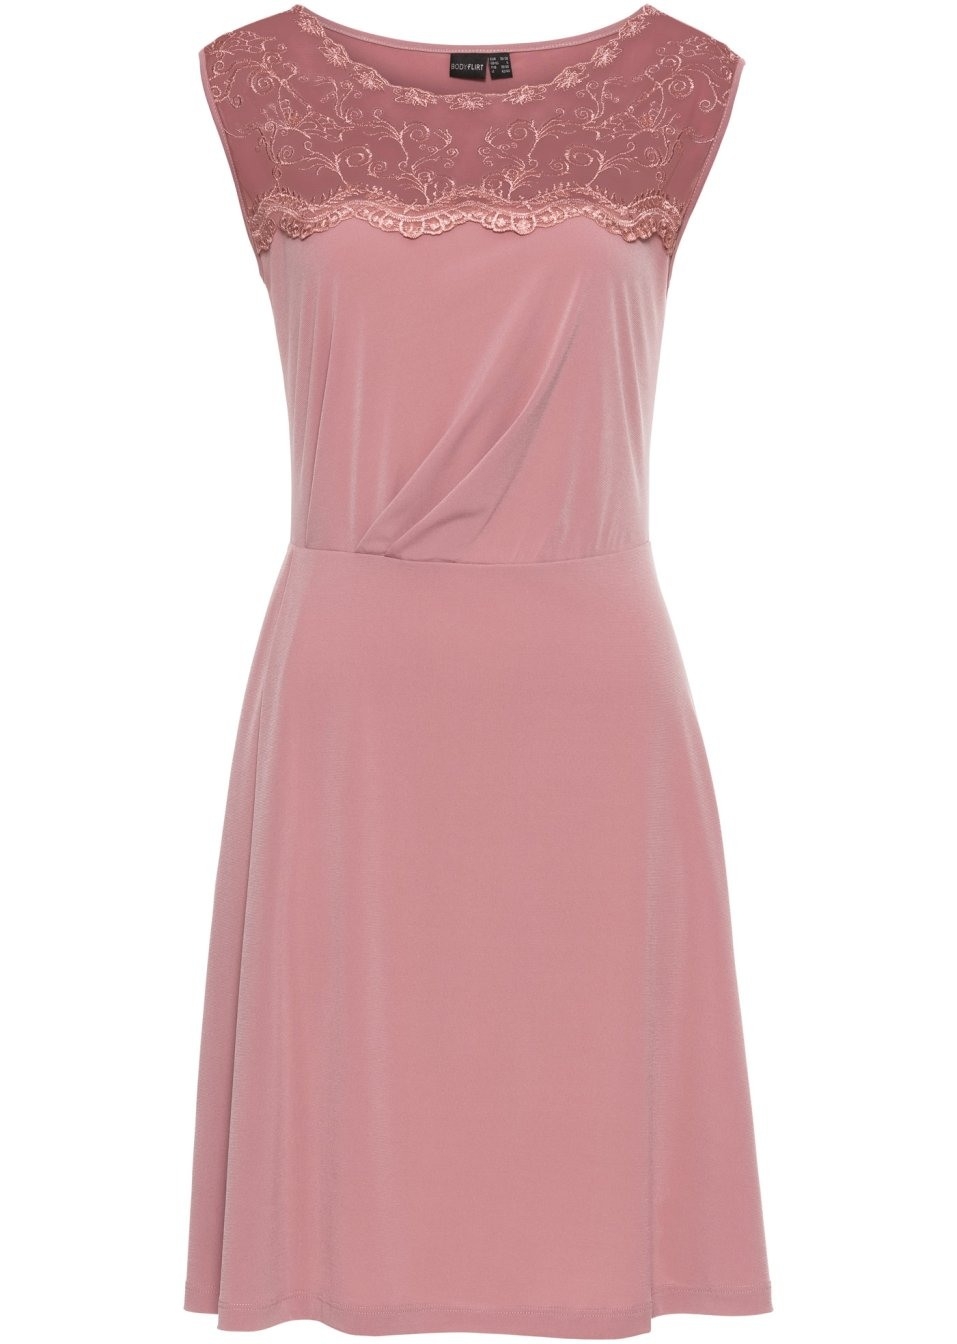 17 Cool Altrosa Kleid Mit Spitze Vertrieb15 Spektakulär Altrosa Kleid Mit Spitze Design